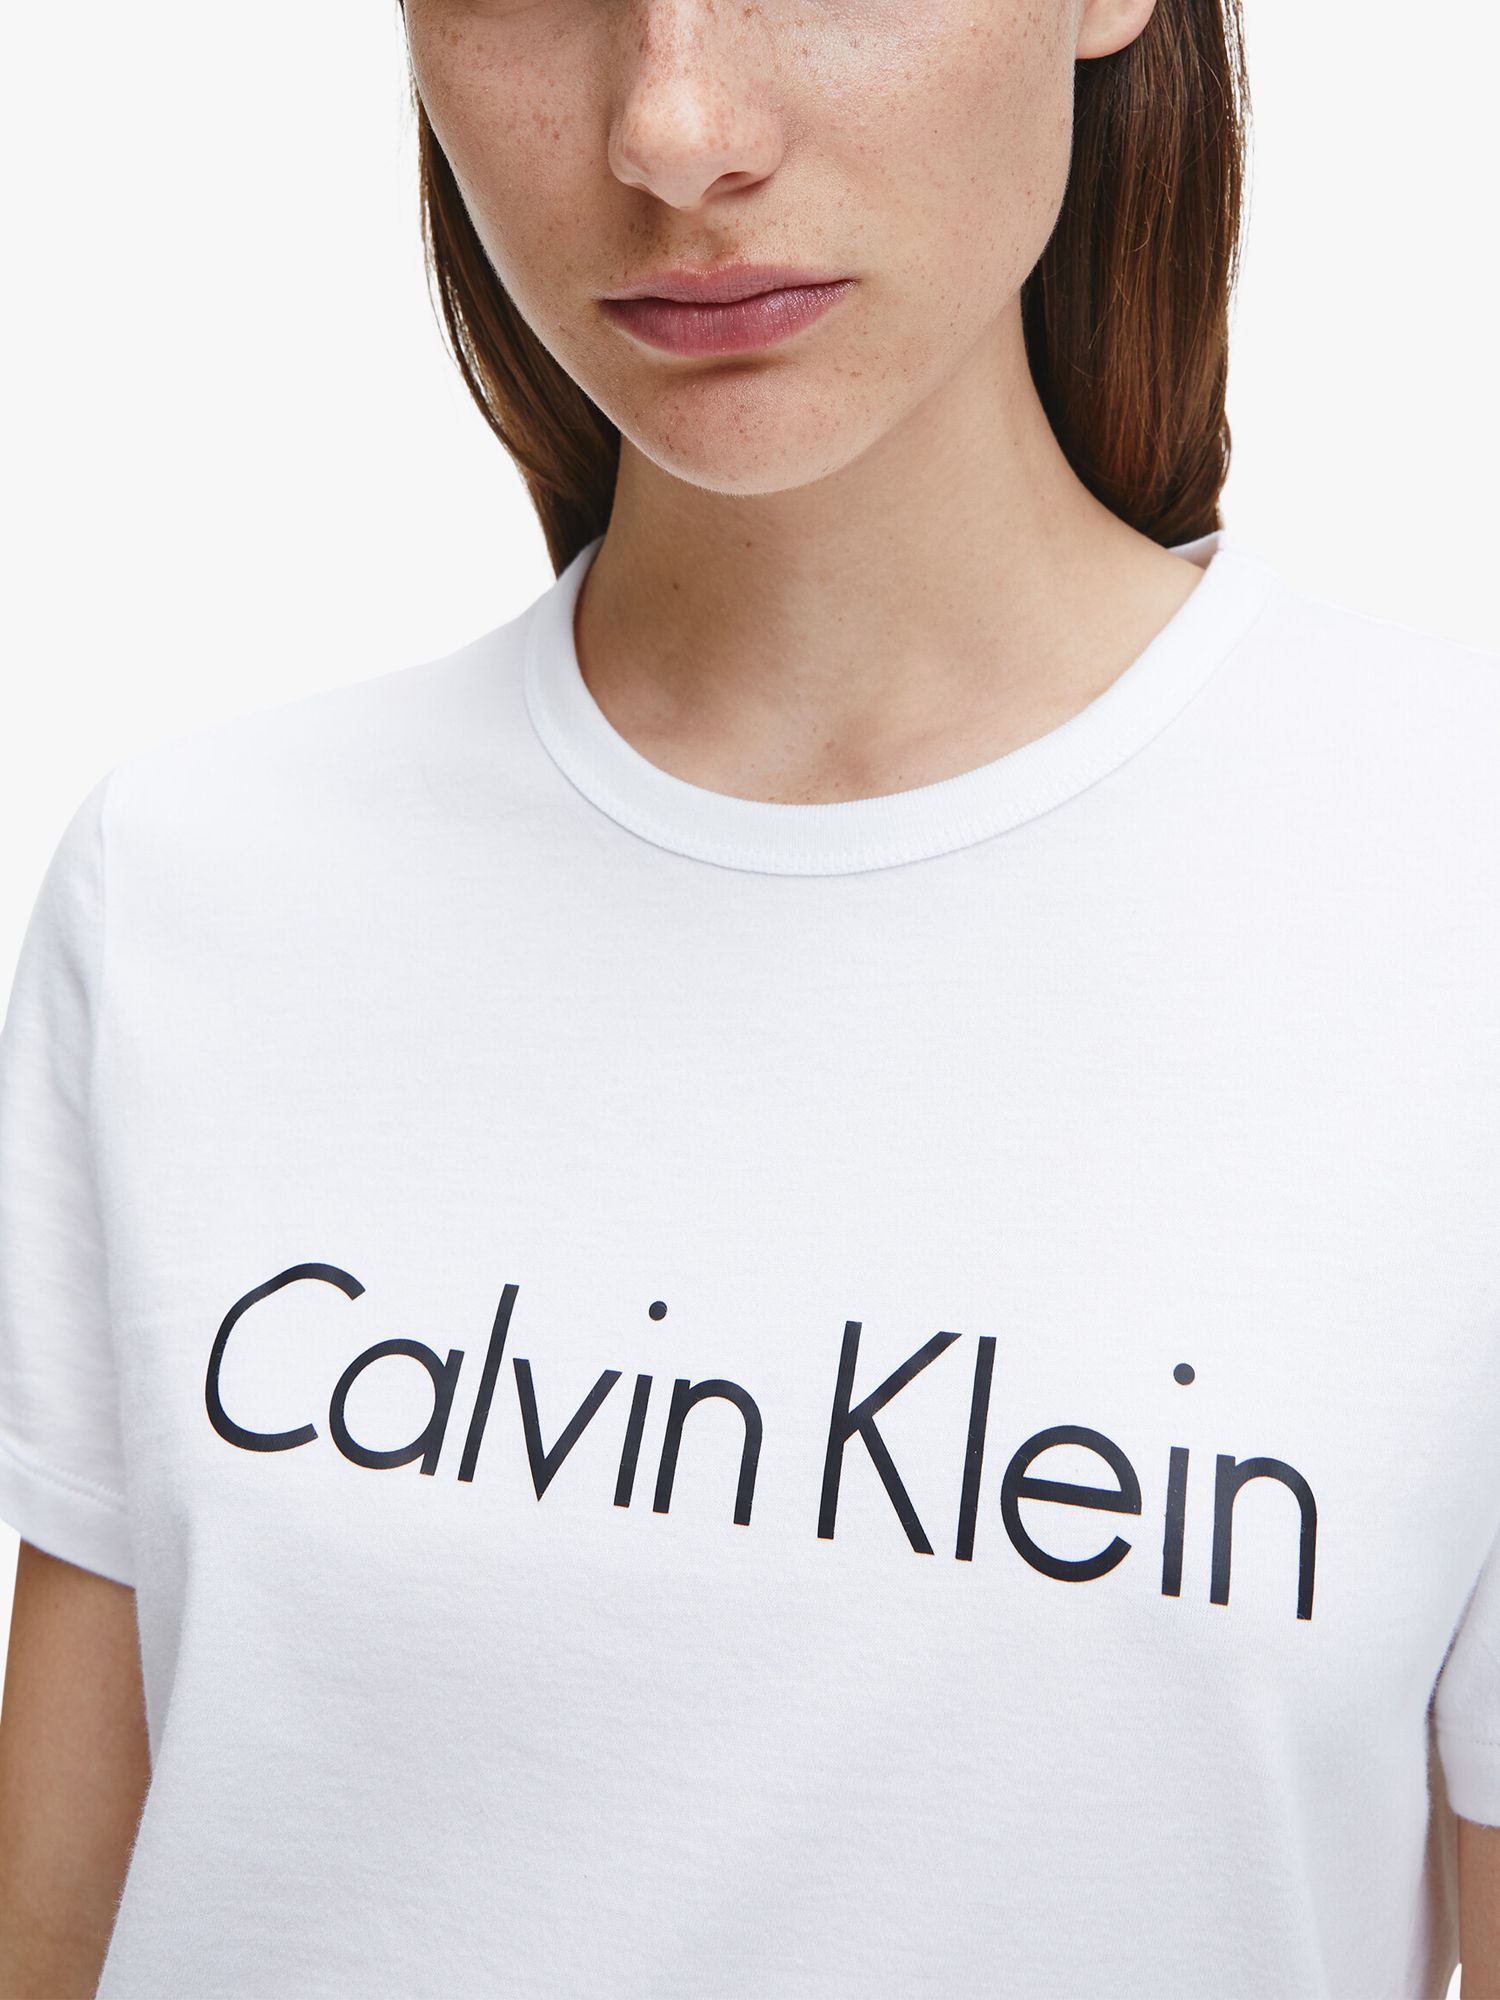 Calvin Klein Women's Relax Short Sleeve Logo T-Shirt Dress, Light